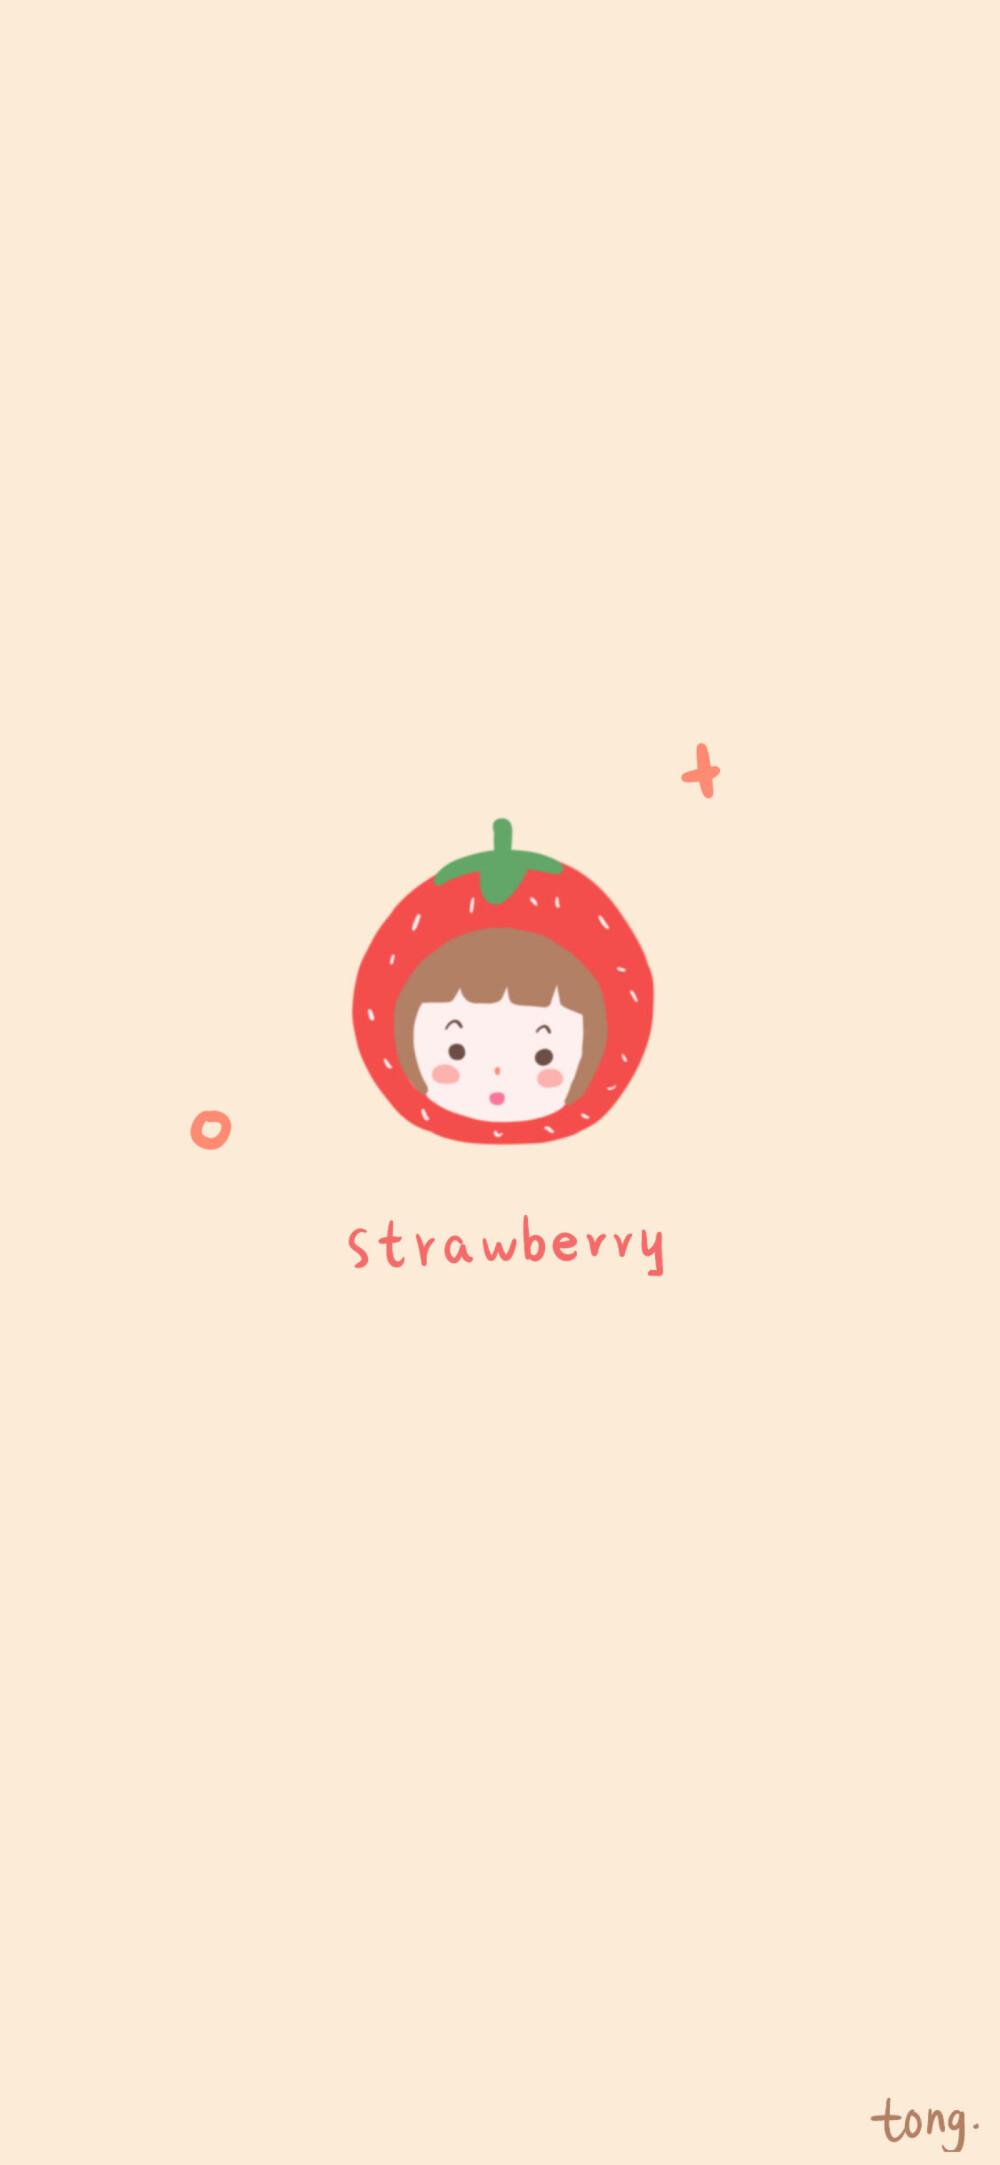 ins超火草莓背景图有字图片